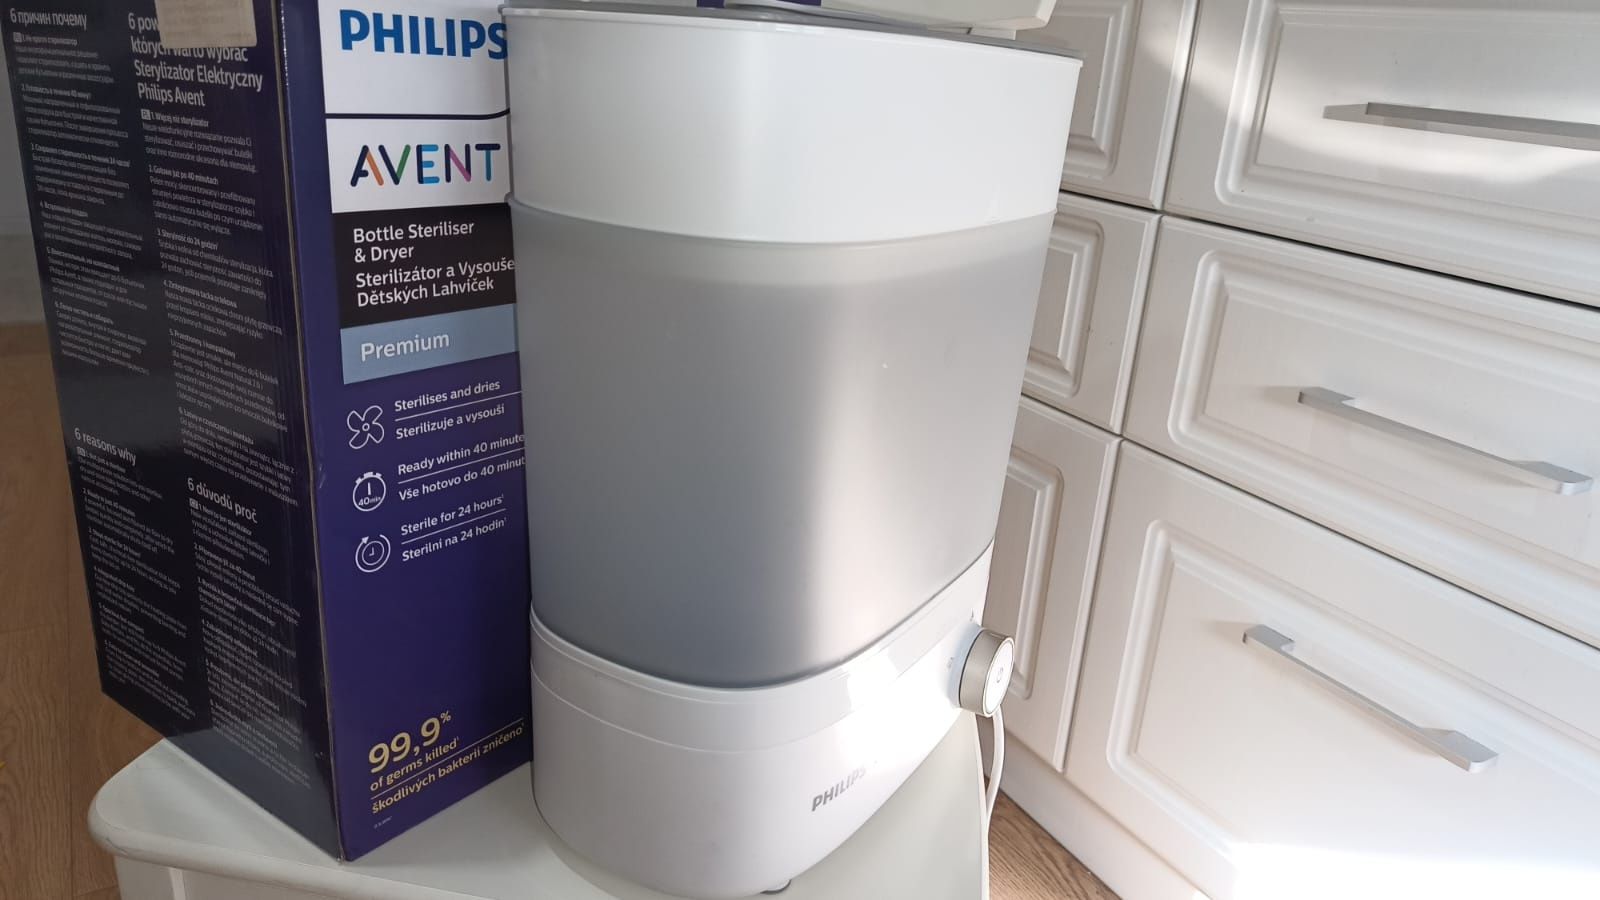 Sterilizator electric si uscator de biberoane Philips Avent Premium